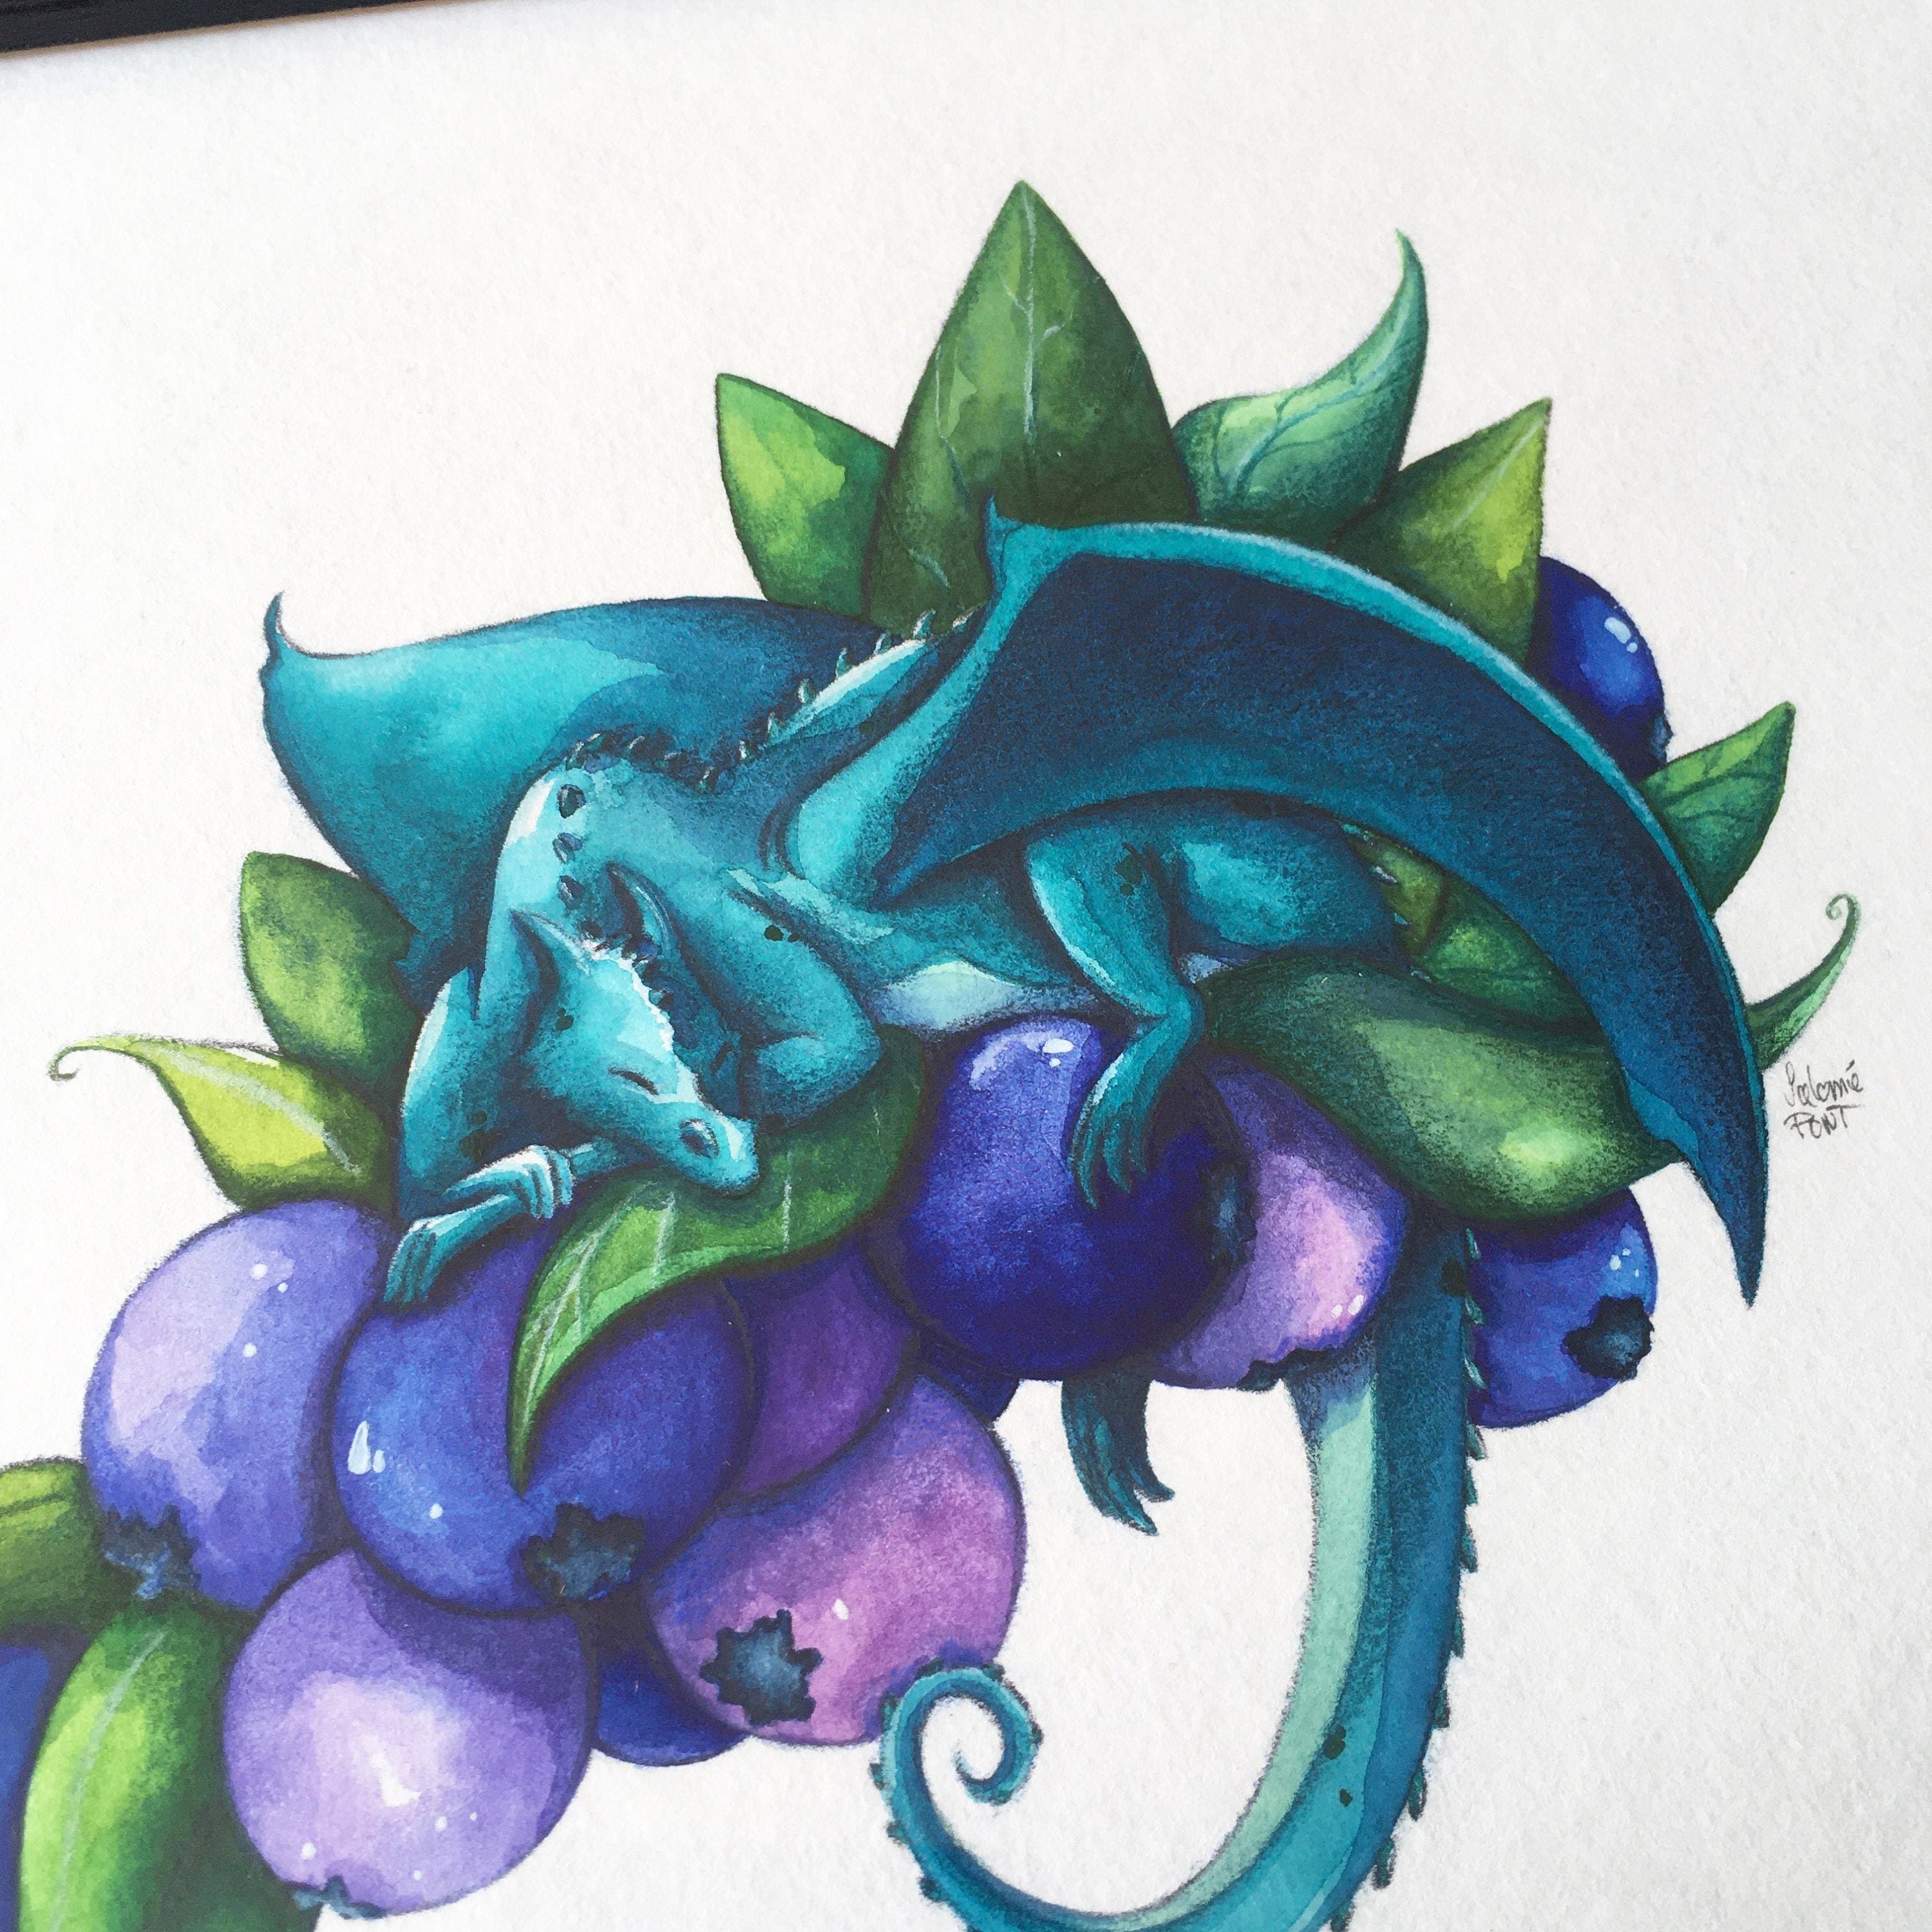 Illustration Aquarelle Dragon Bleu Endormi sur Des Myrtilles, avec Cadre Noir